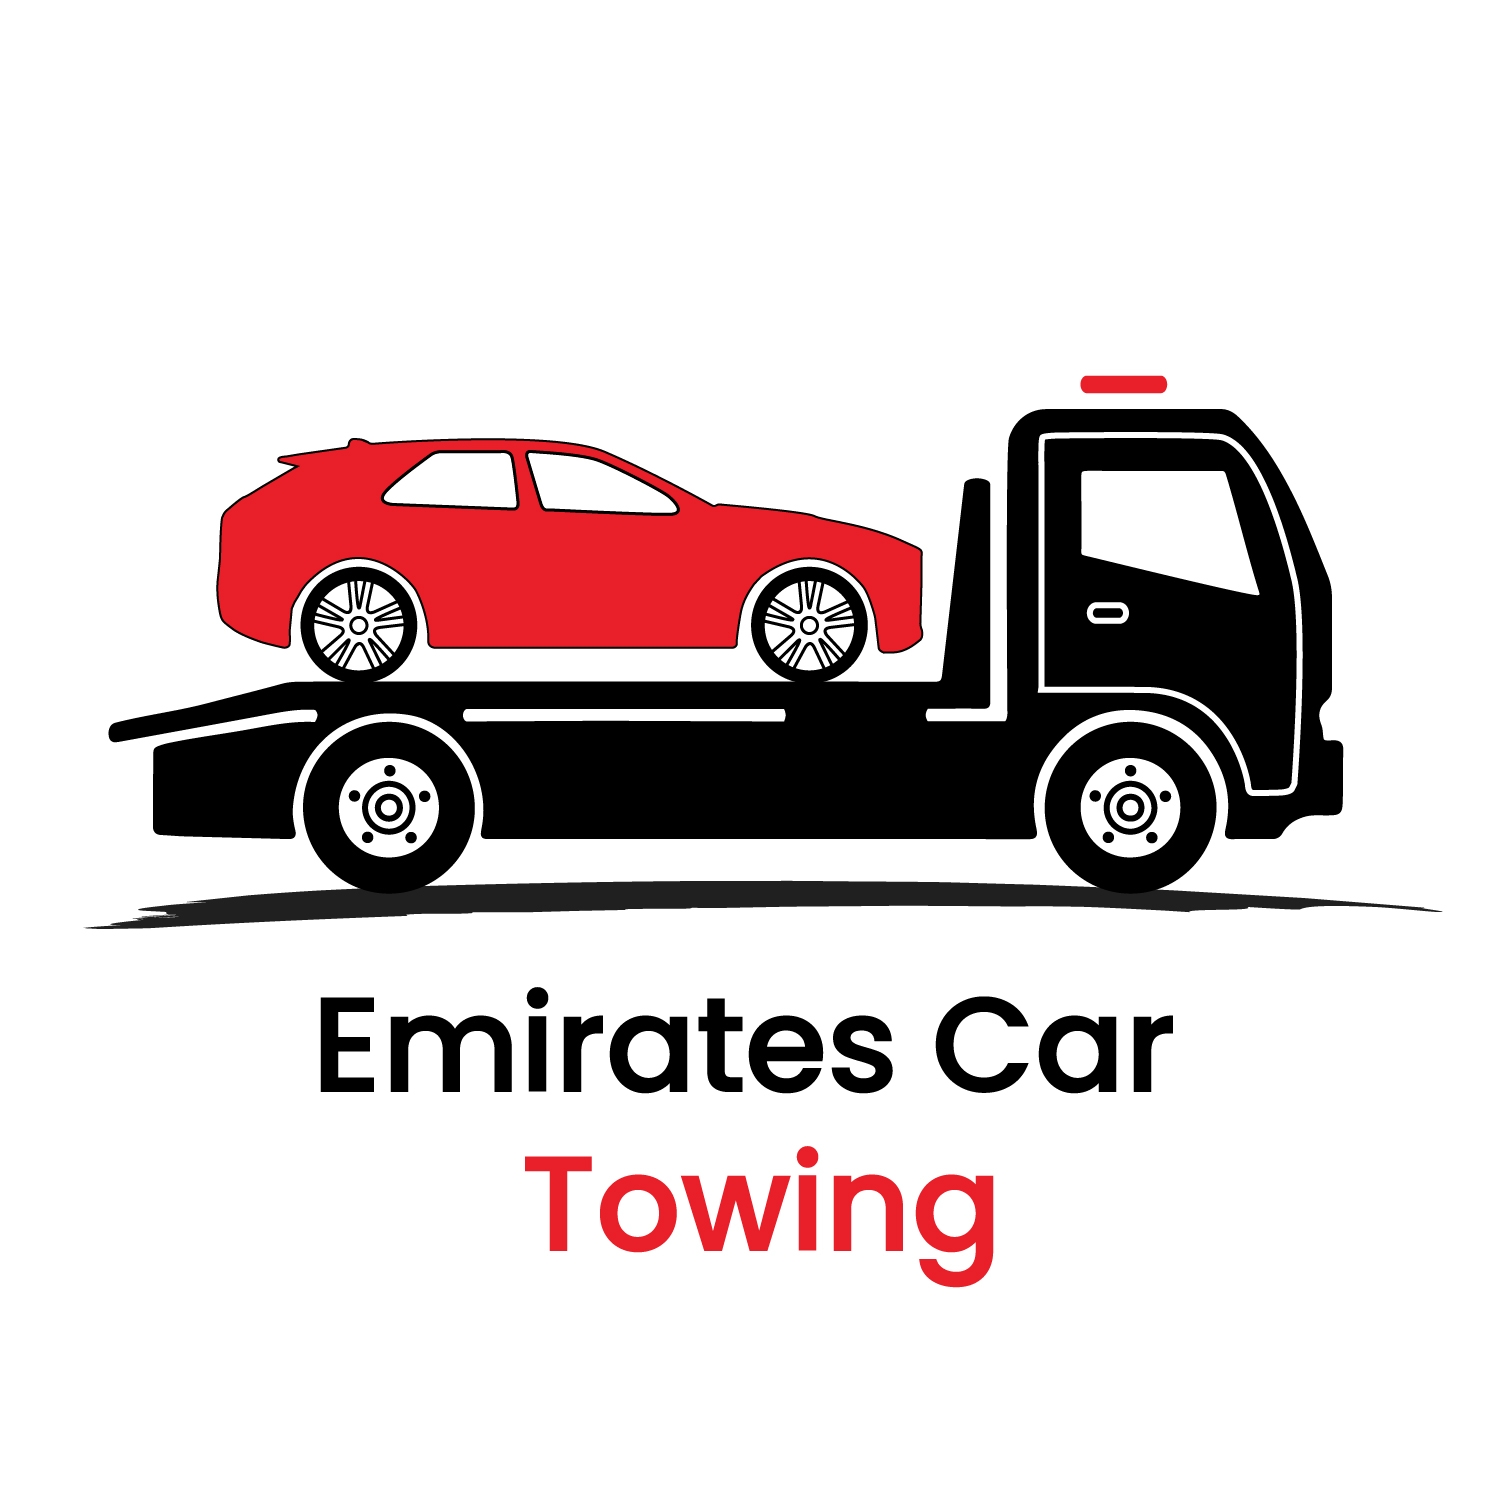 Emirates Car Towing 